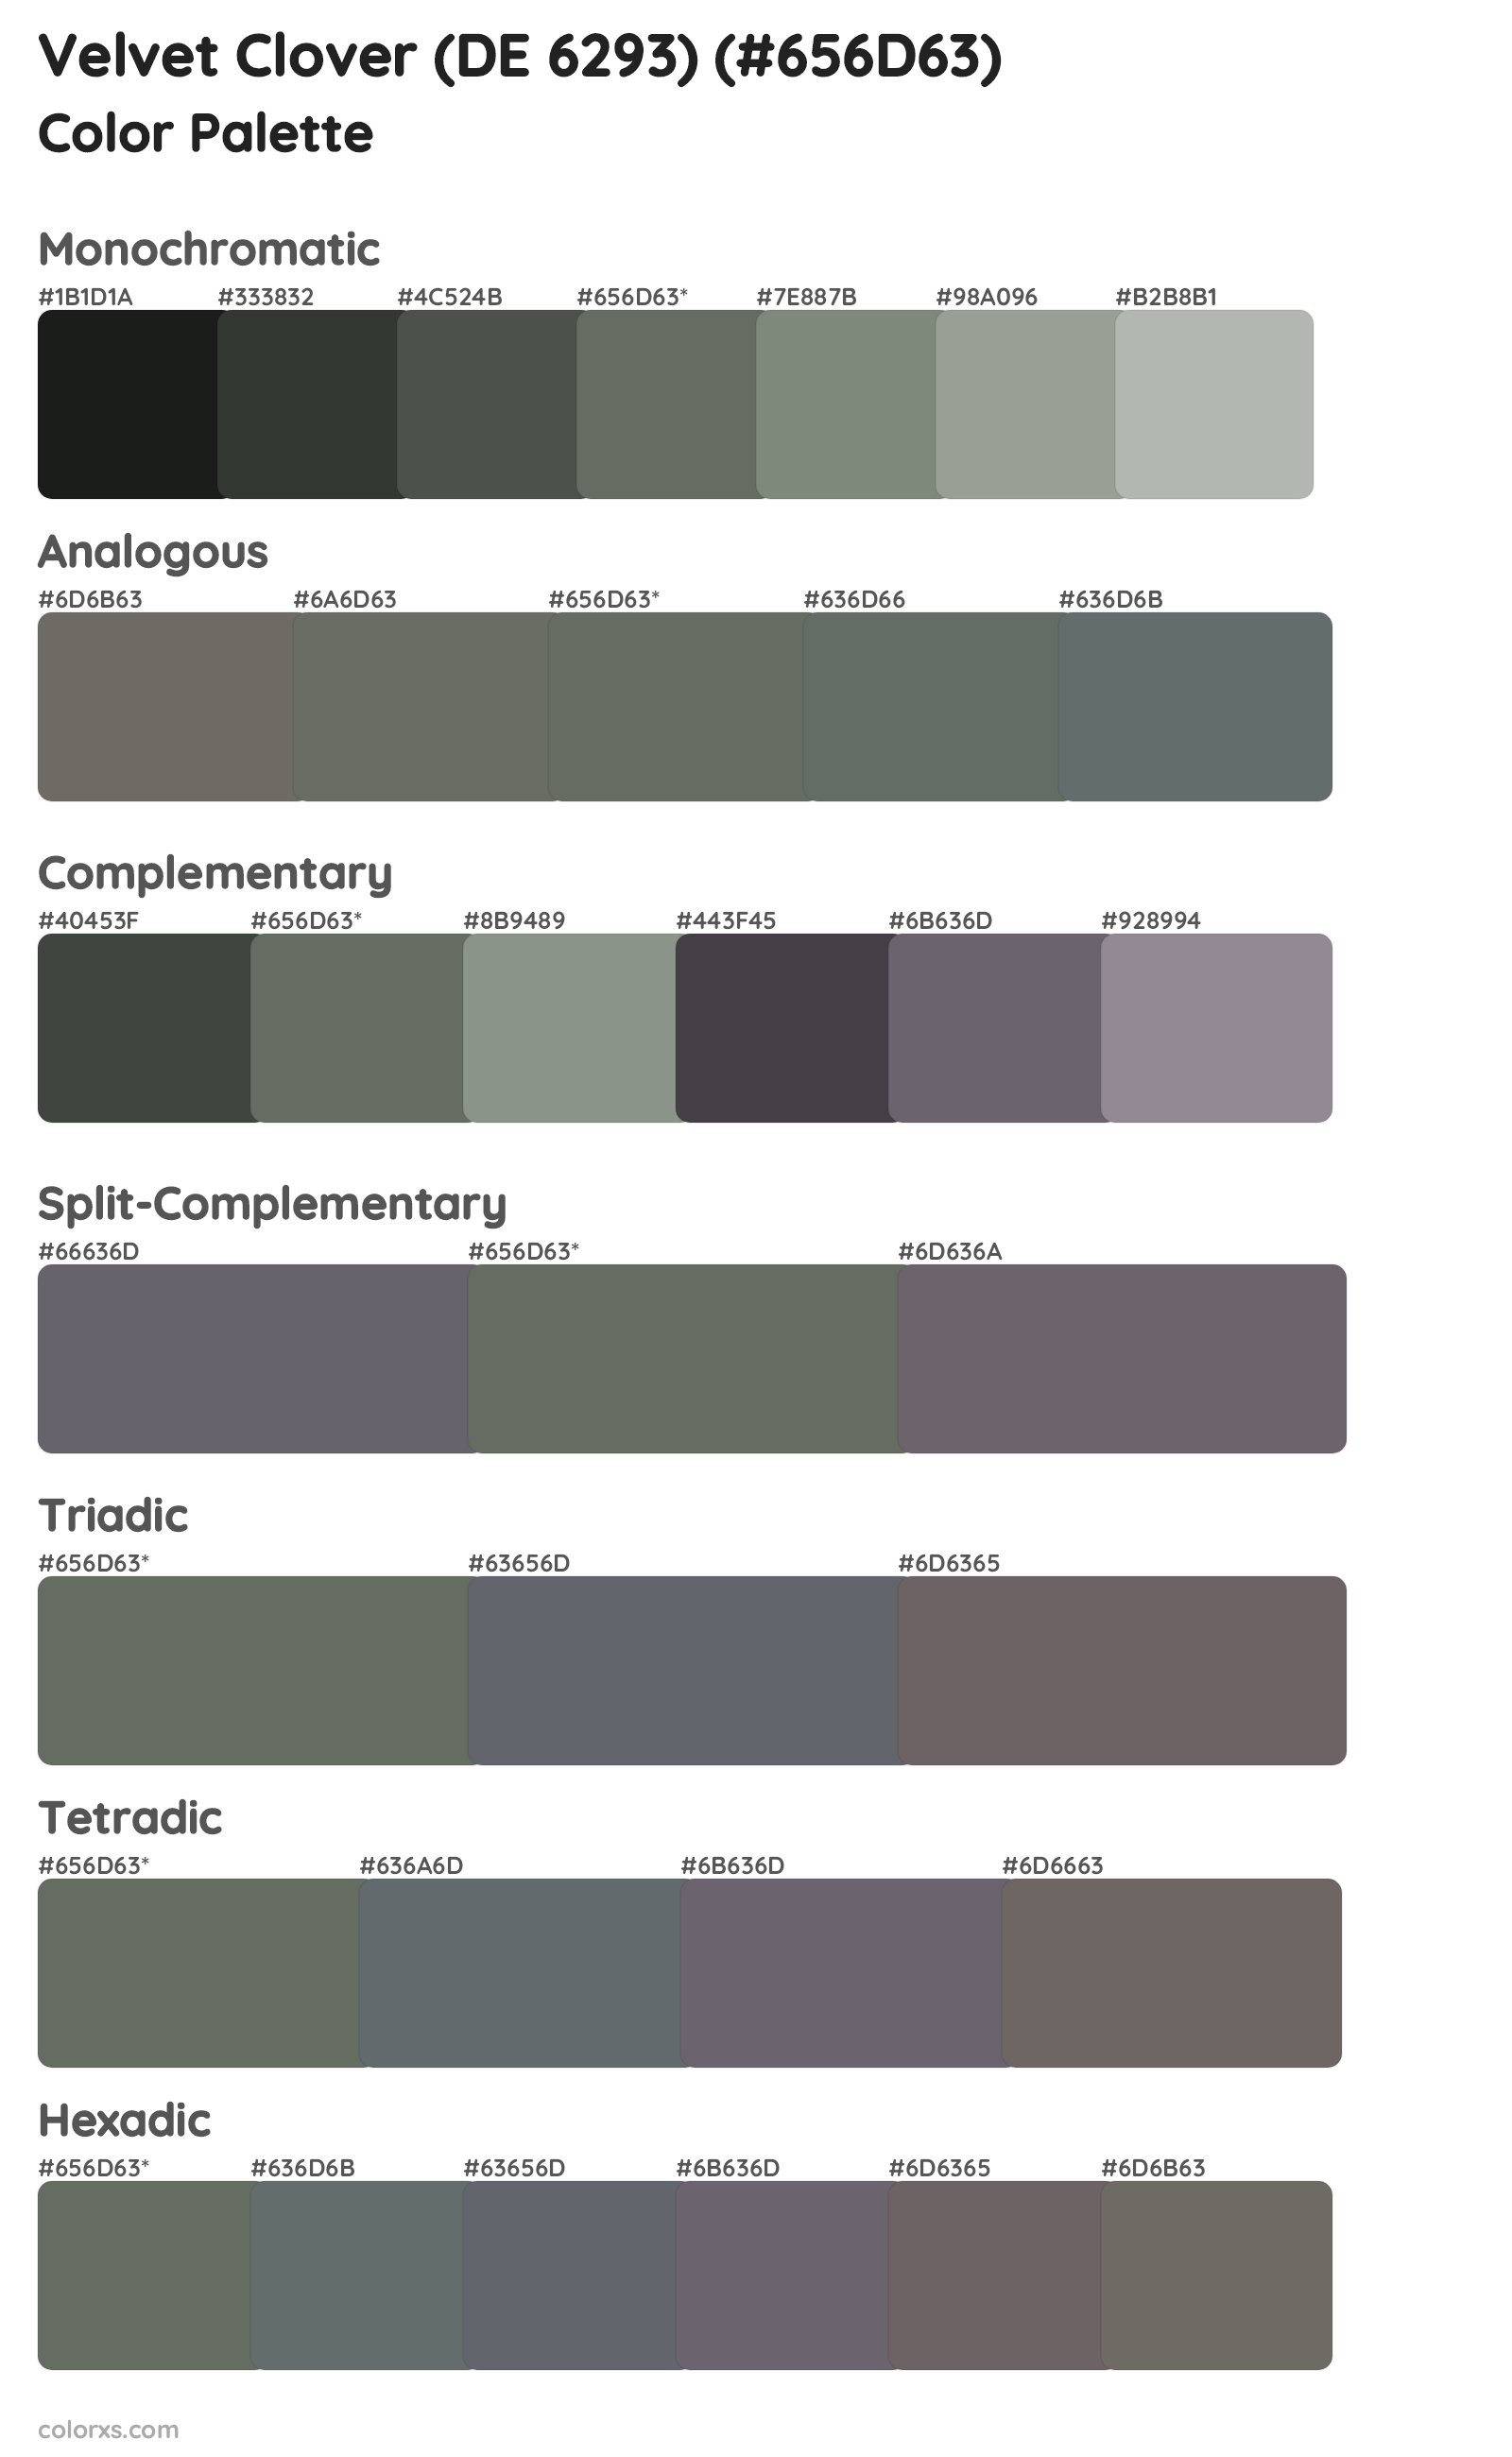 Velvet Clover (DE 6293) Color Scheme Palettes